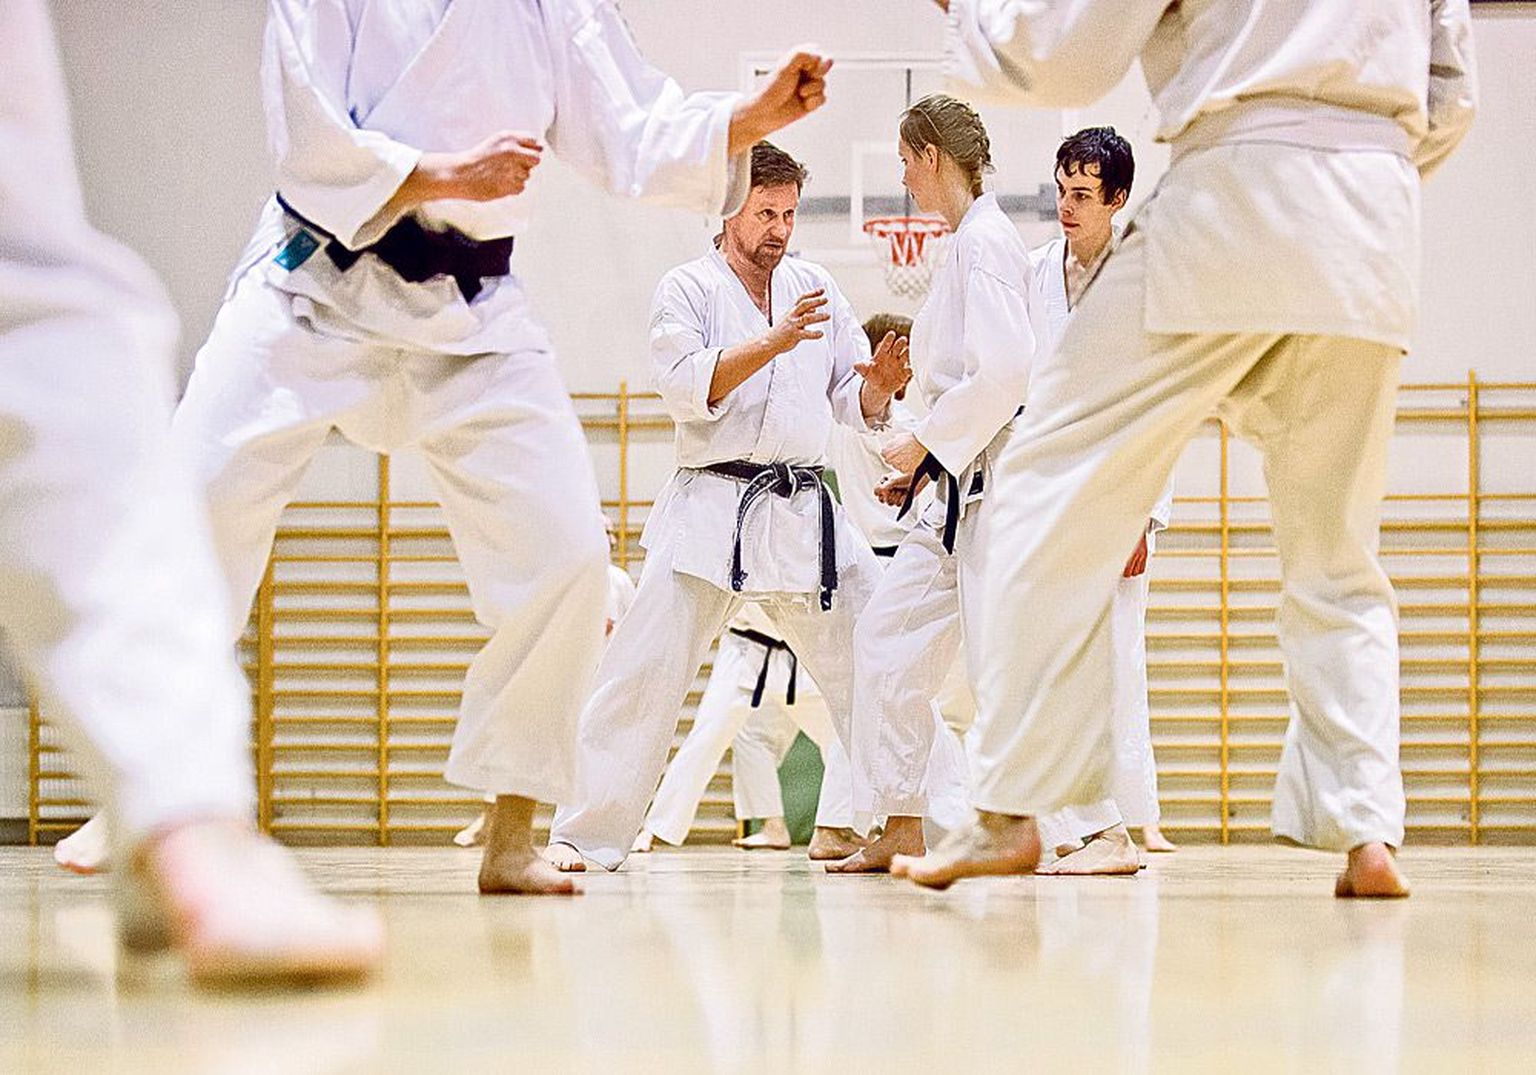 Väldivad 
konflikti: 
harjutamise eesmärk on osata karatet kui võitluskunsti nii, et seda ei oleks mitte kunagi vaja väljaspool treeningruumi rakendada. Ründaja peab juba rünnatava olekust aru saama, et vägivald on tulutu.